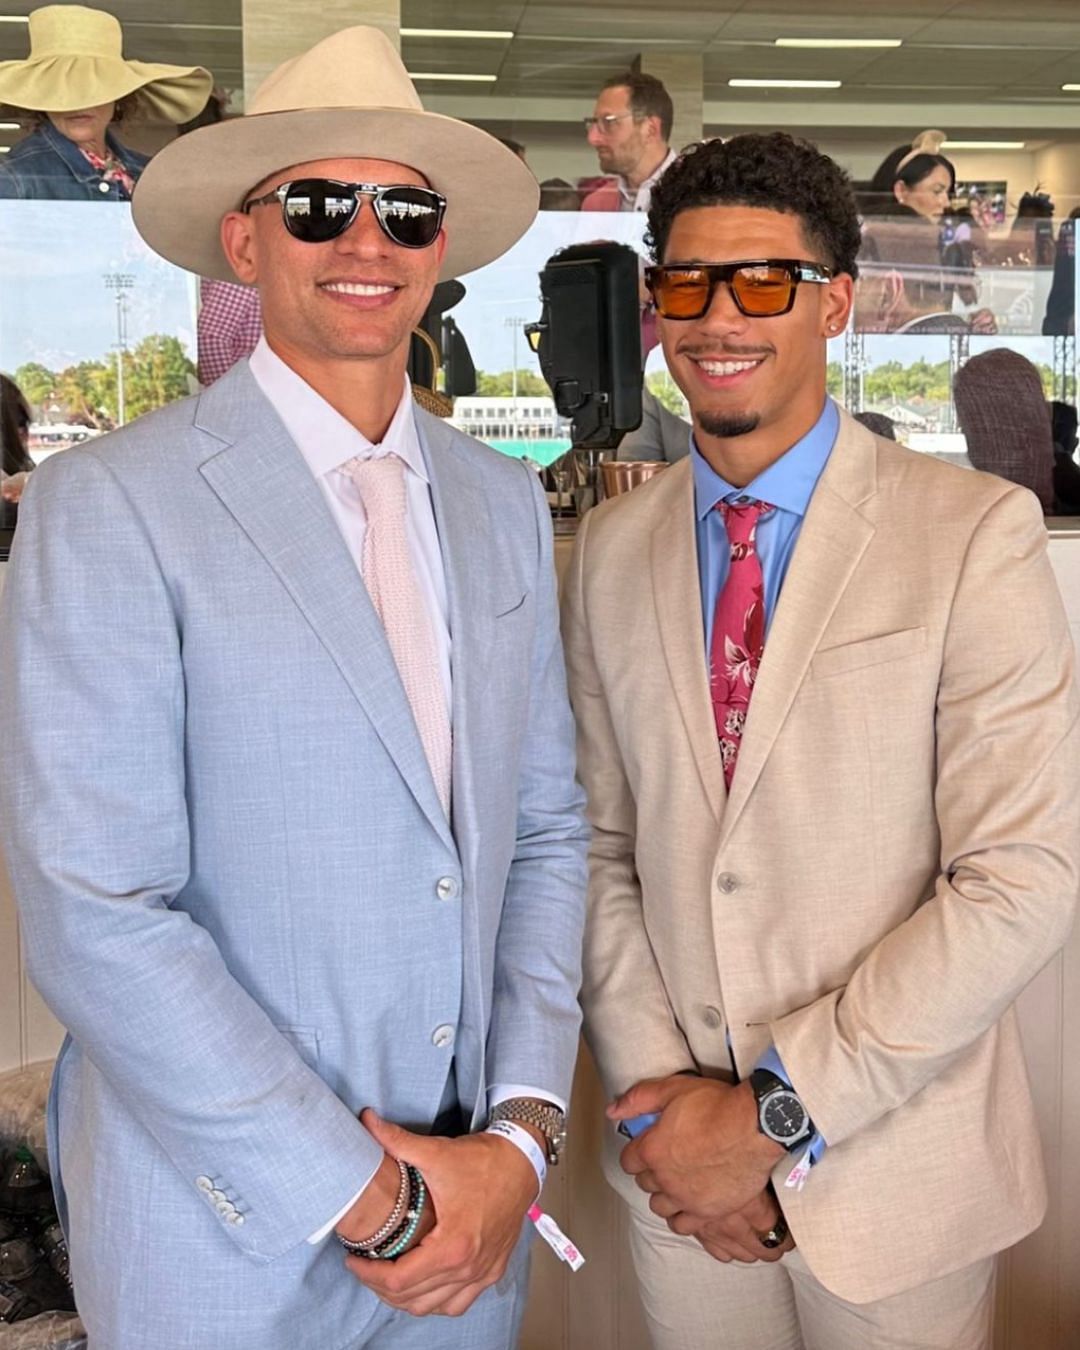 Graham with WR Allen Lazard at the Kentucky Derby. Credit: @thejimmygraham (IG)